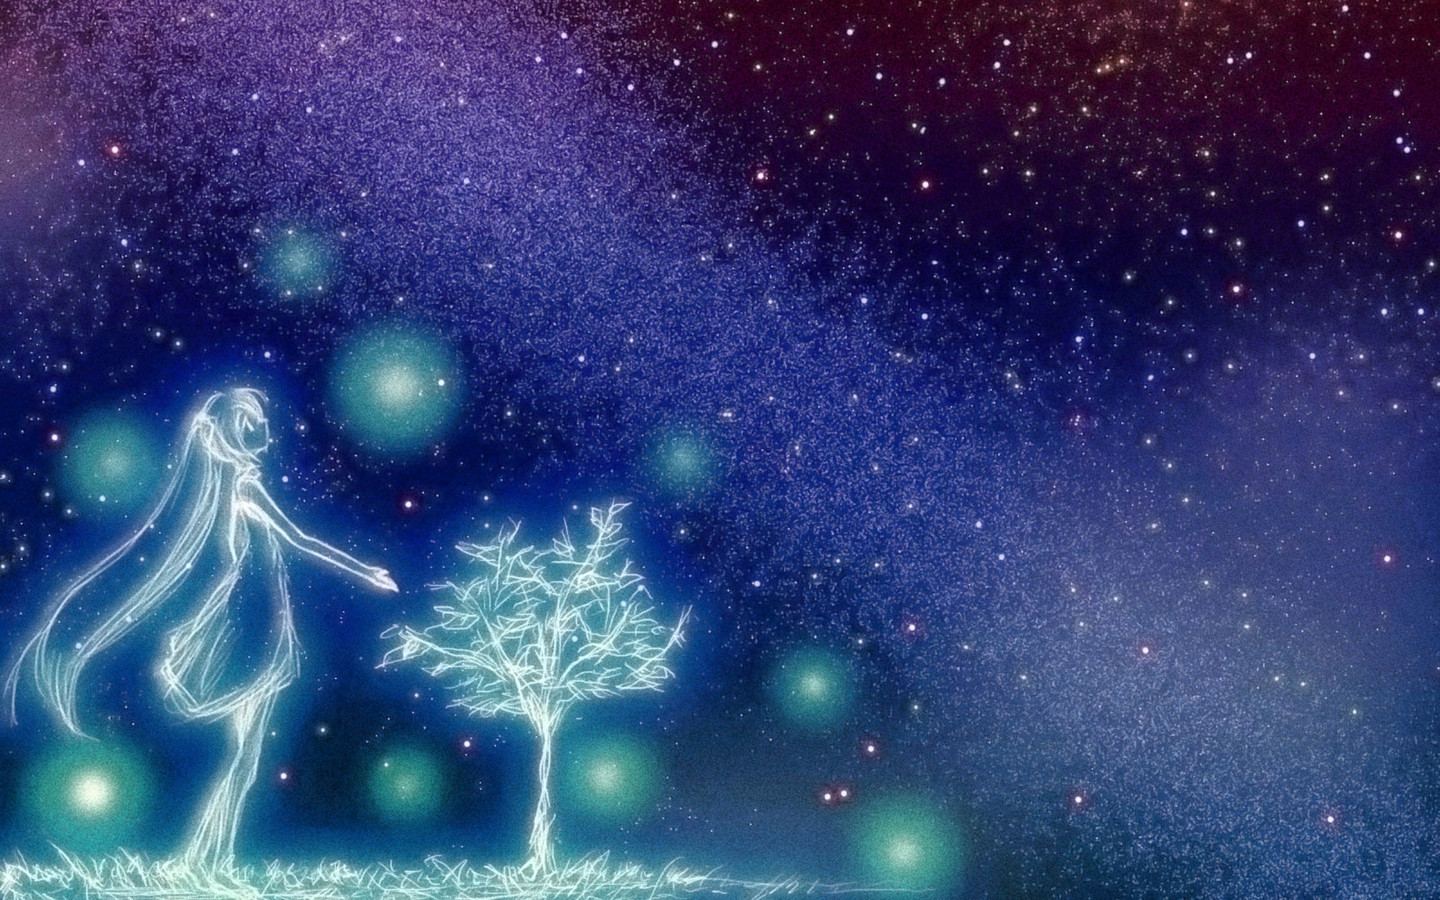 Hình nền máy tính HD đặc sắc với sự kết hợp tuyệt vời giữa anime, đêm, bầu trời đầy sao, Vocaloid, Hatsune sẽ khiến bạn không thể cưỡng lại được sự quyến rũ. Những hình nền đẹp mắt này không chỉ tô điểm cho giao diện máy tính của bạn, mà còn khiến bạn tràn đầy sức sống khi ngồi làm việc.